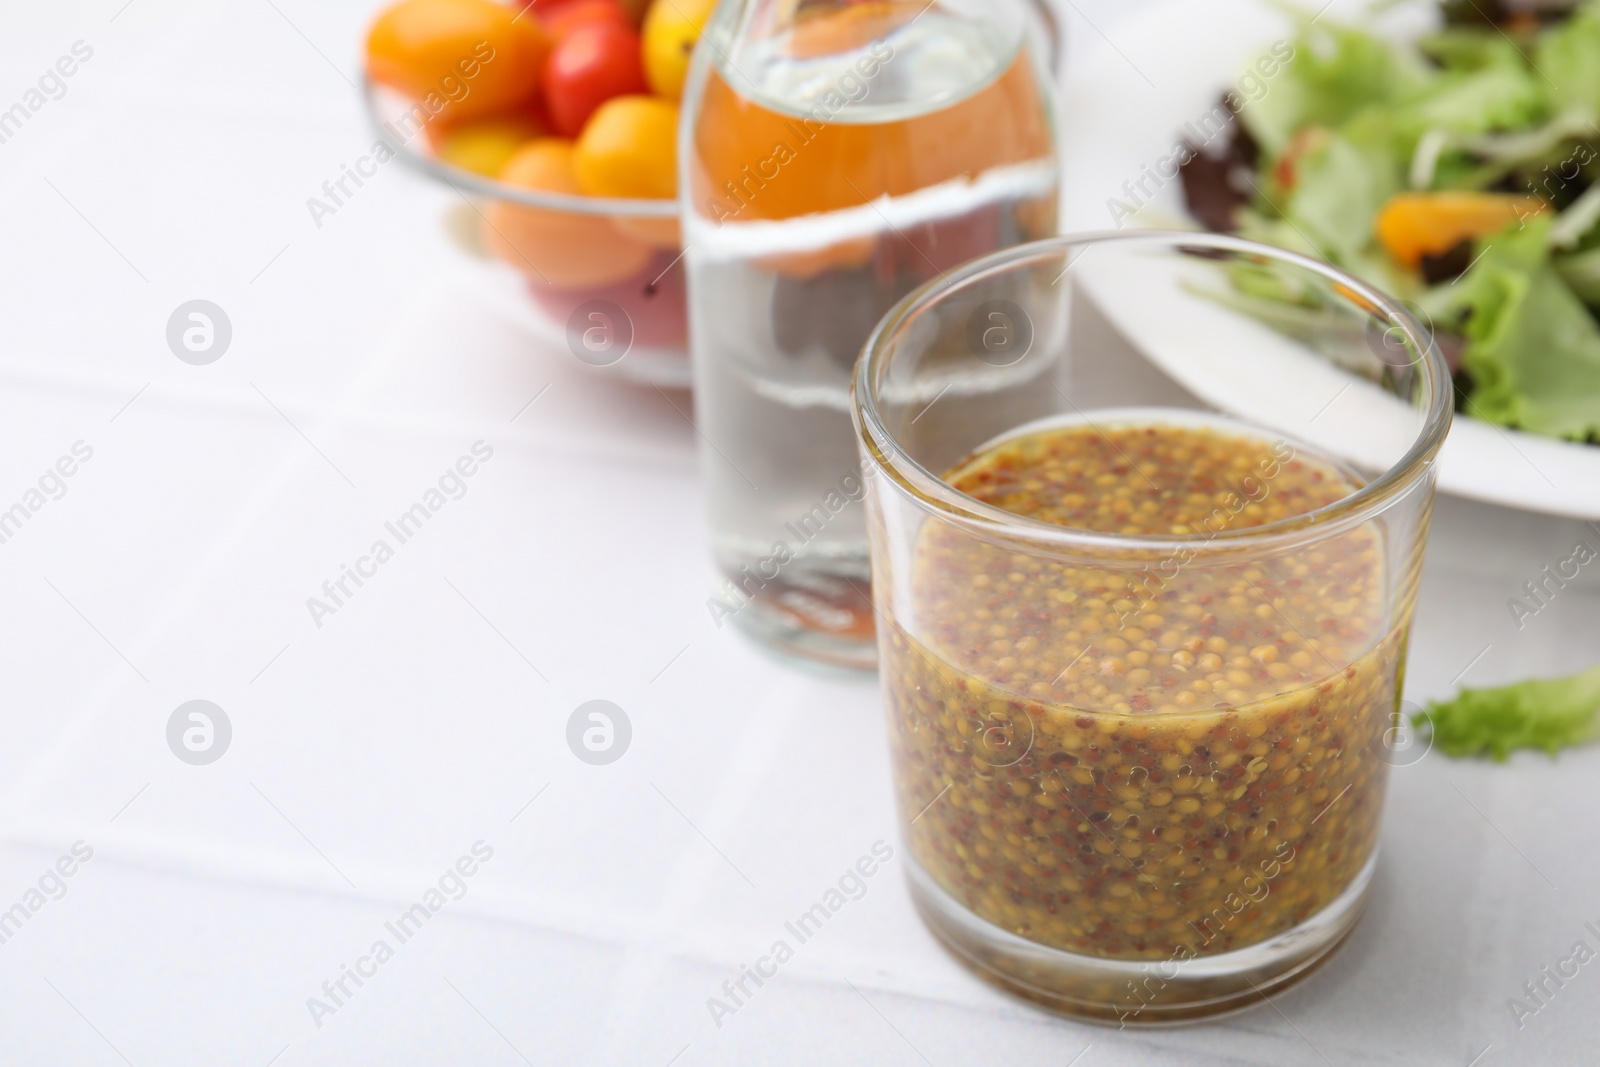 Photo of Tasty vinegar based sauce (Vinaigrette) in glass on light tiled table, closeup. Space for text